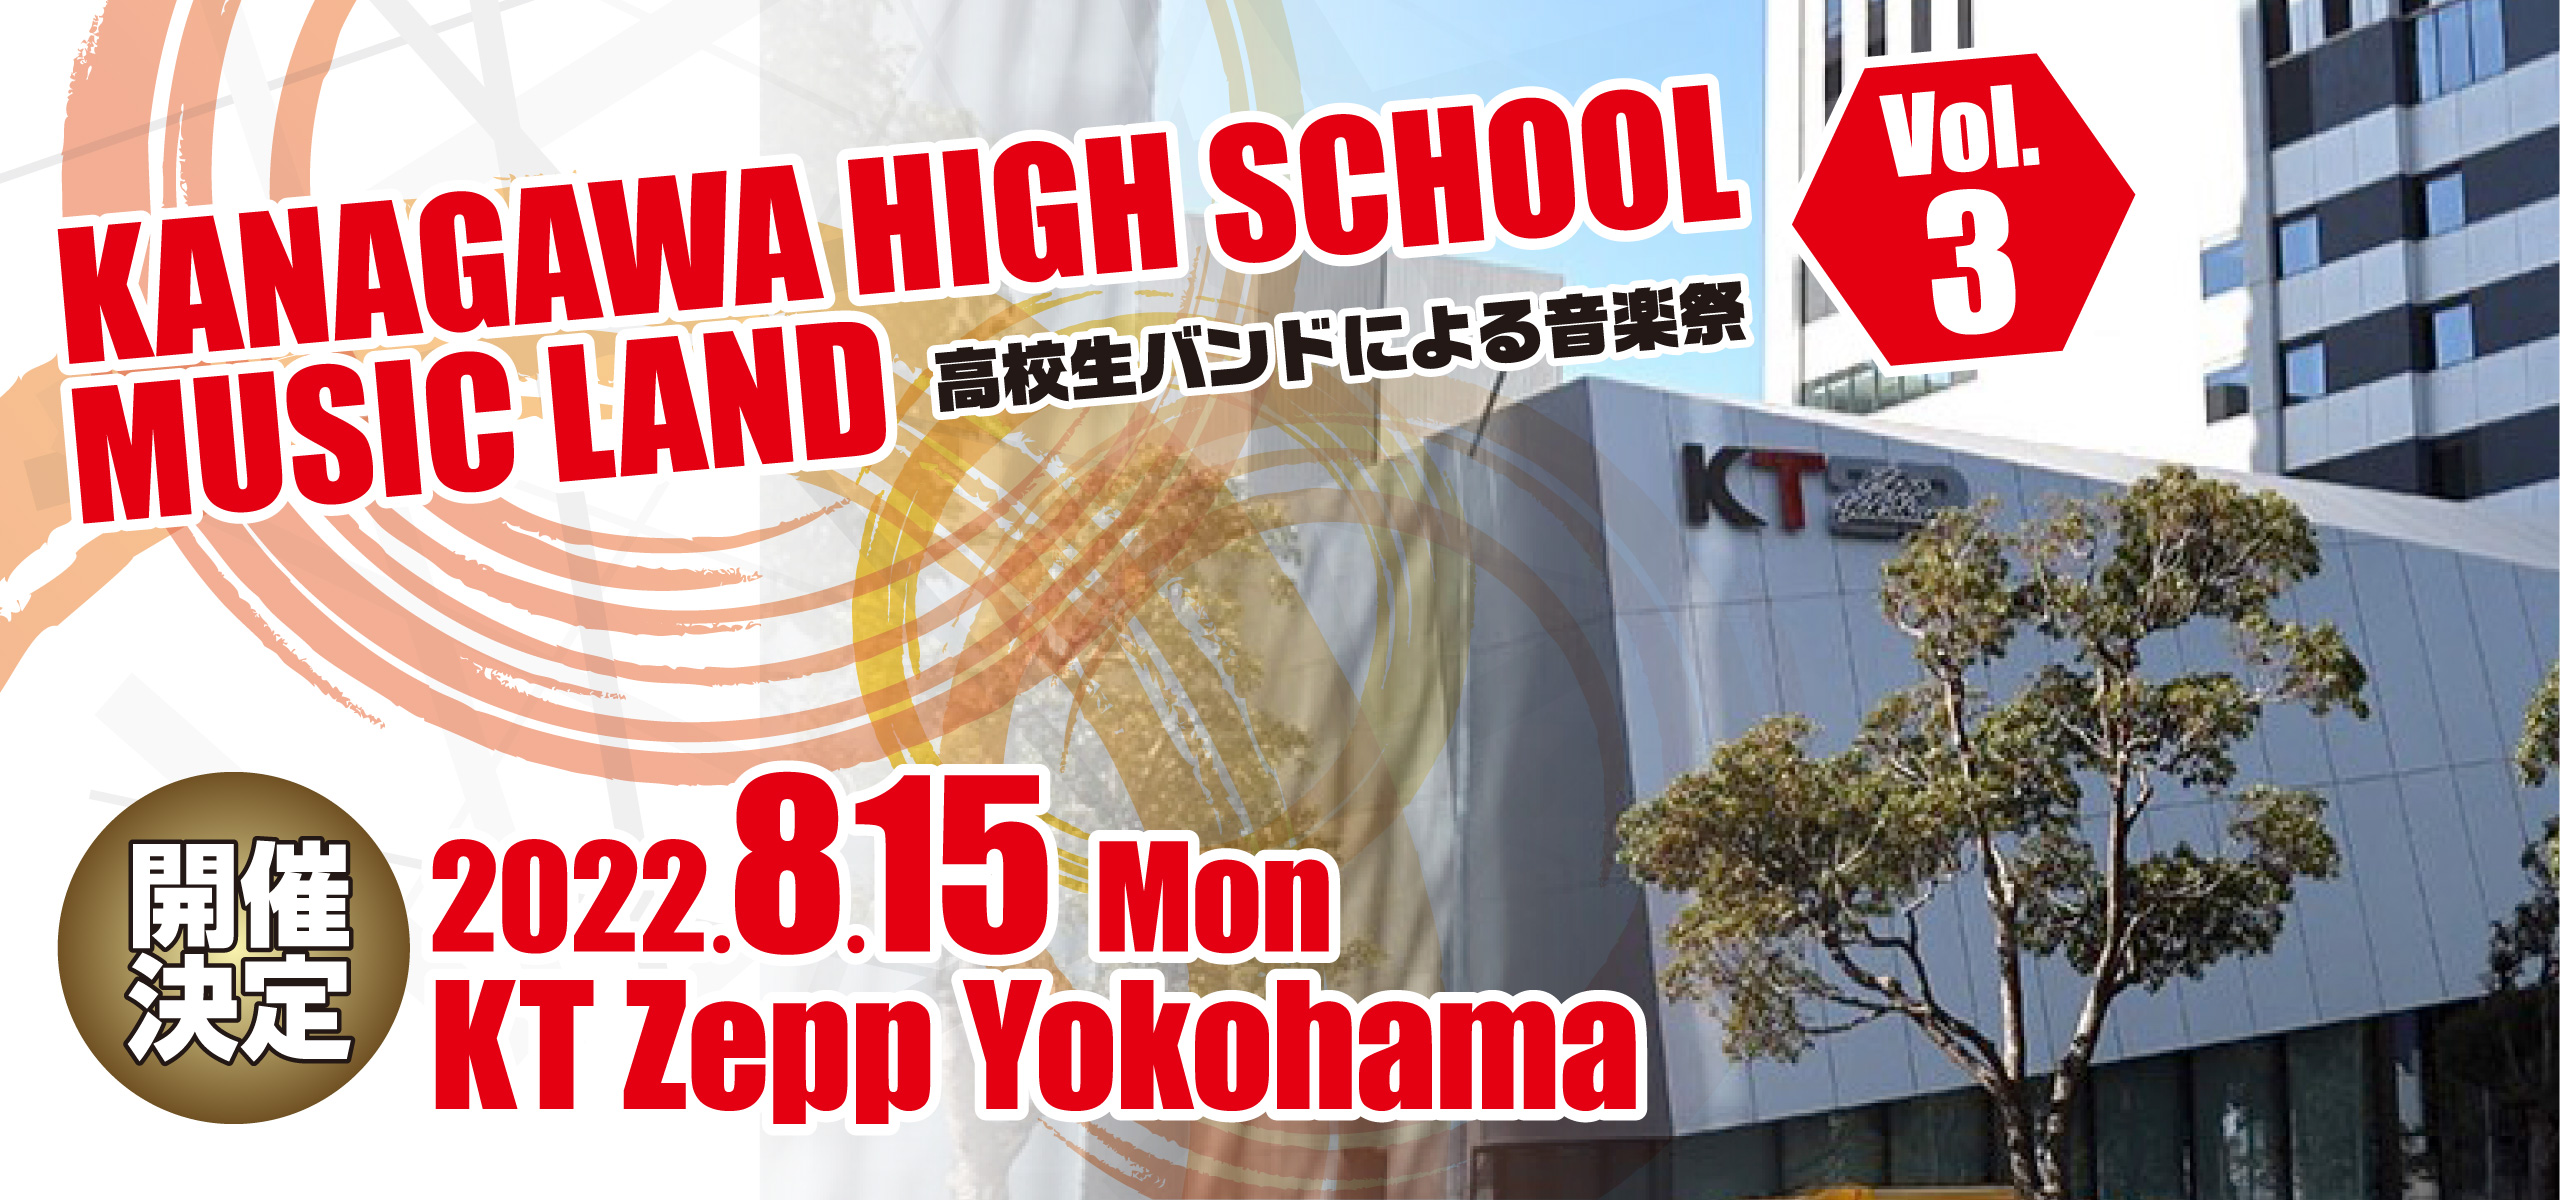 KANAGAWA HIGH SCHOOL MUSIC LAND【高校生の音楽祭】